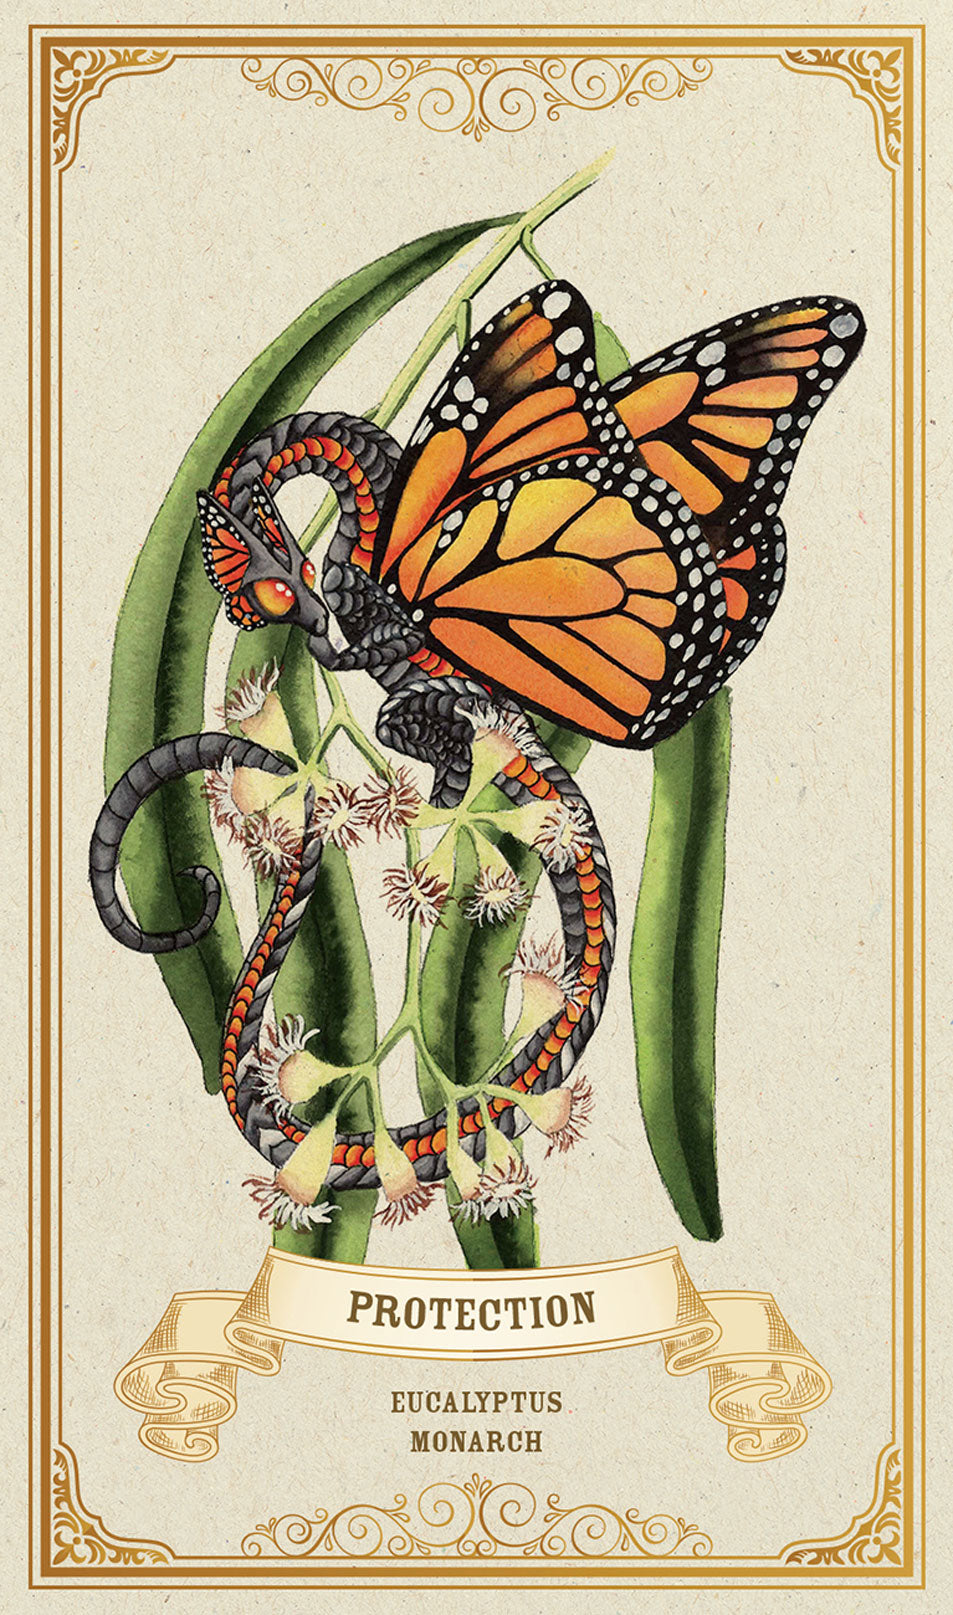 Protection (Eucalyptus, Monarch) card